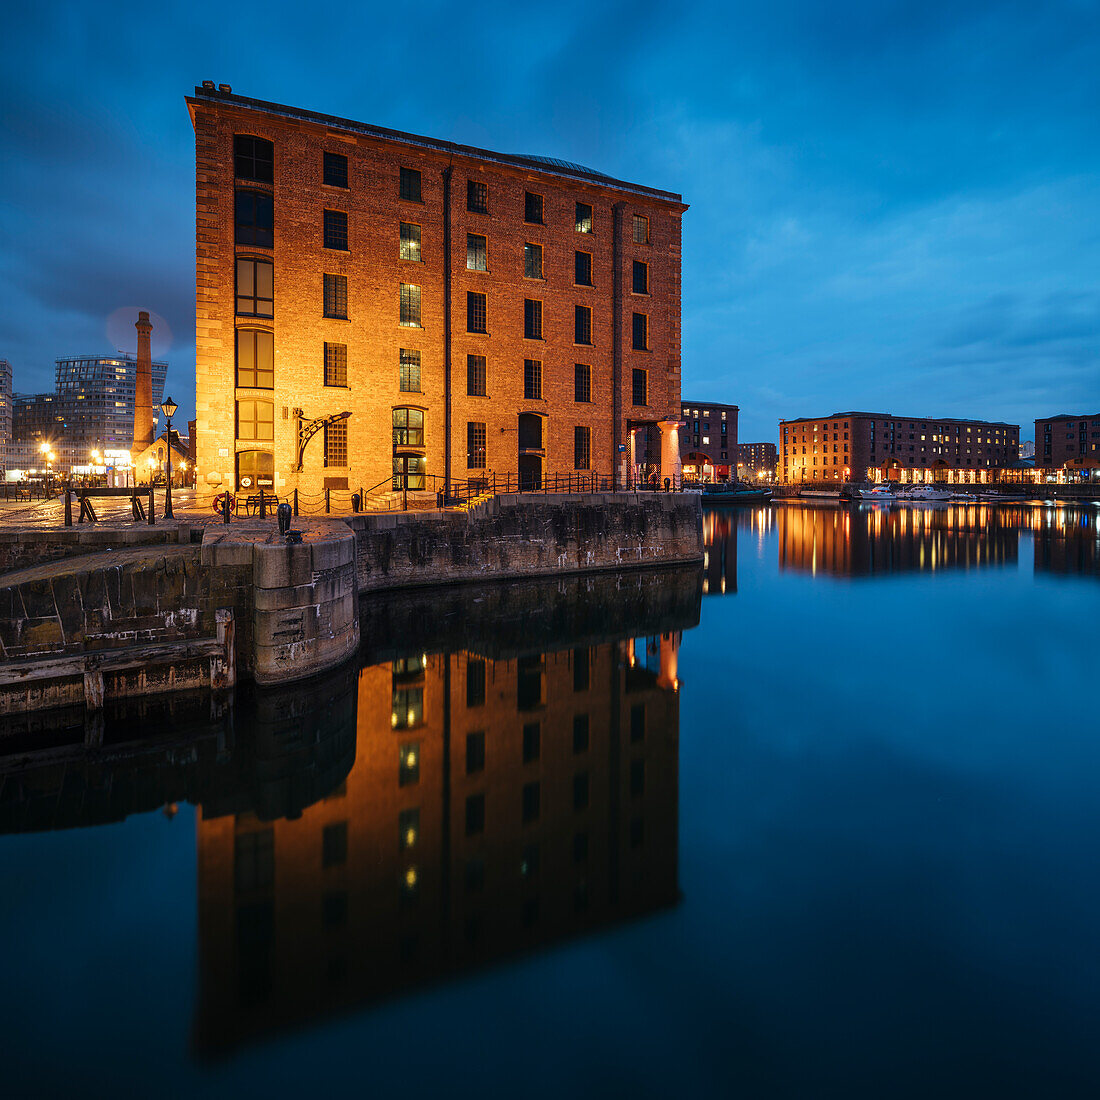 Albert Dock at dusk, Liverpool, Merseyside, England, United Kingdom, Europe